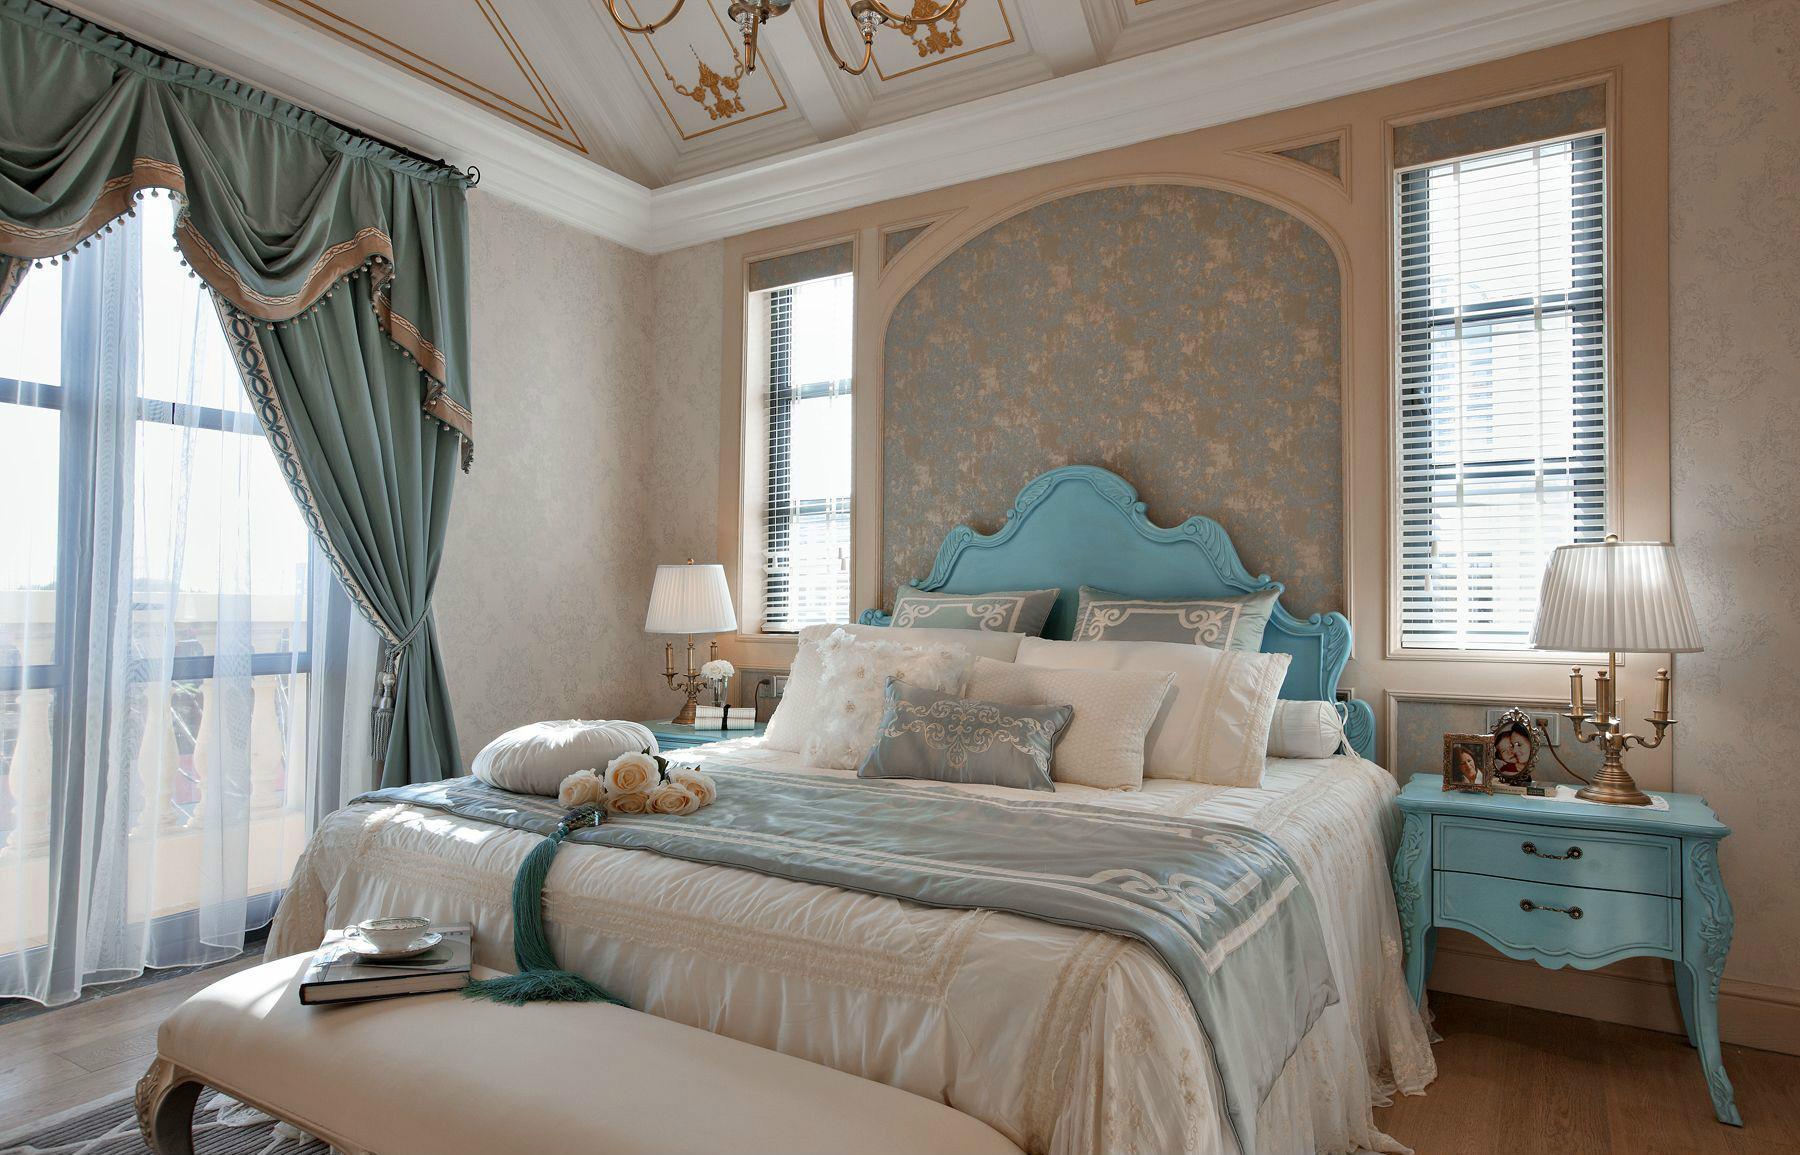 法式风格别墅卧室装修效果图